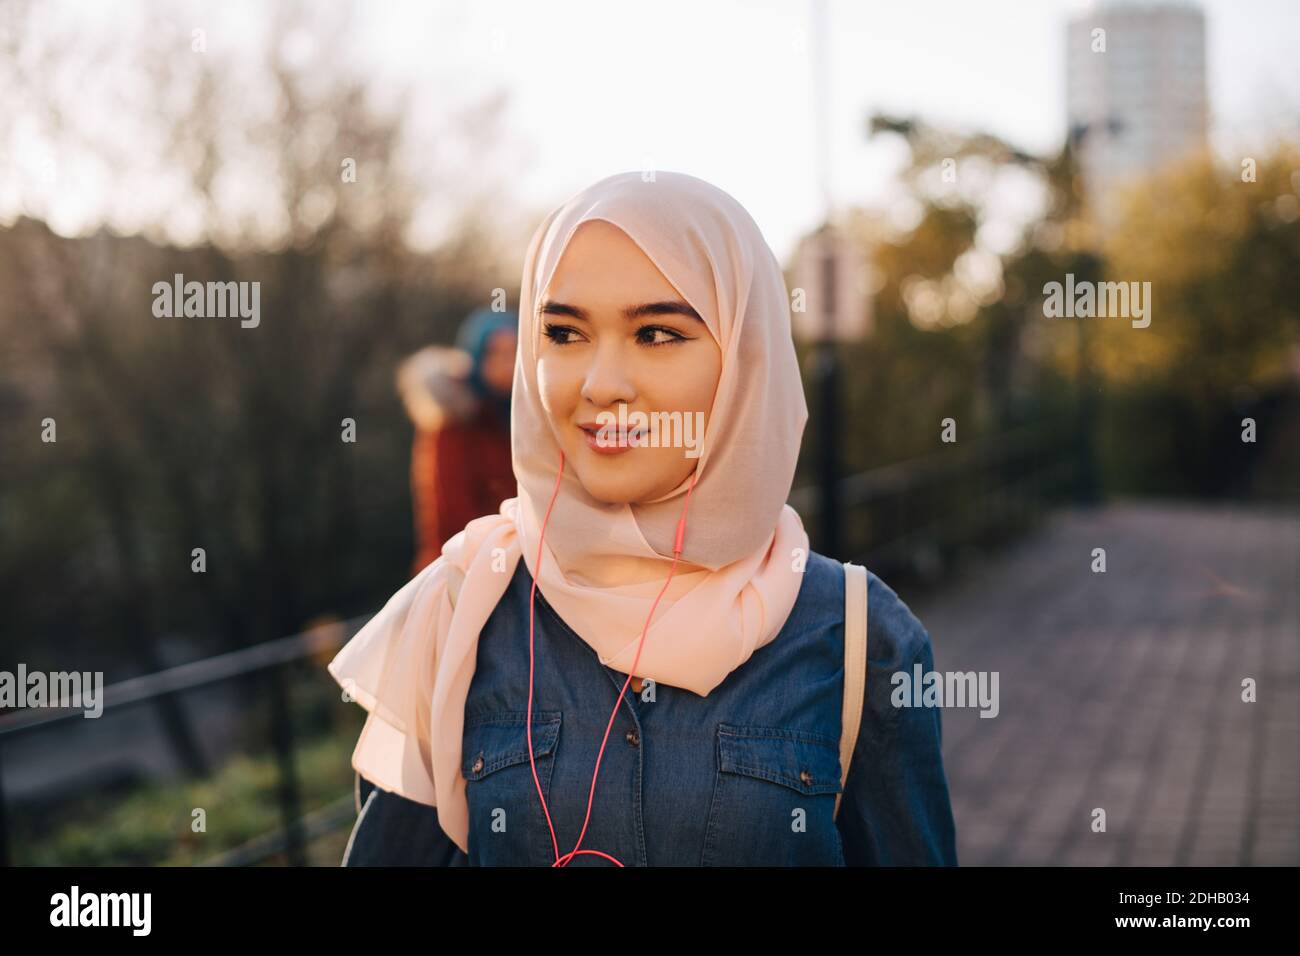 Una joven musulmana segura escuchando música mirando hacia fuera contra la claridad cielo Foto de stock